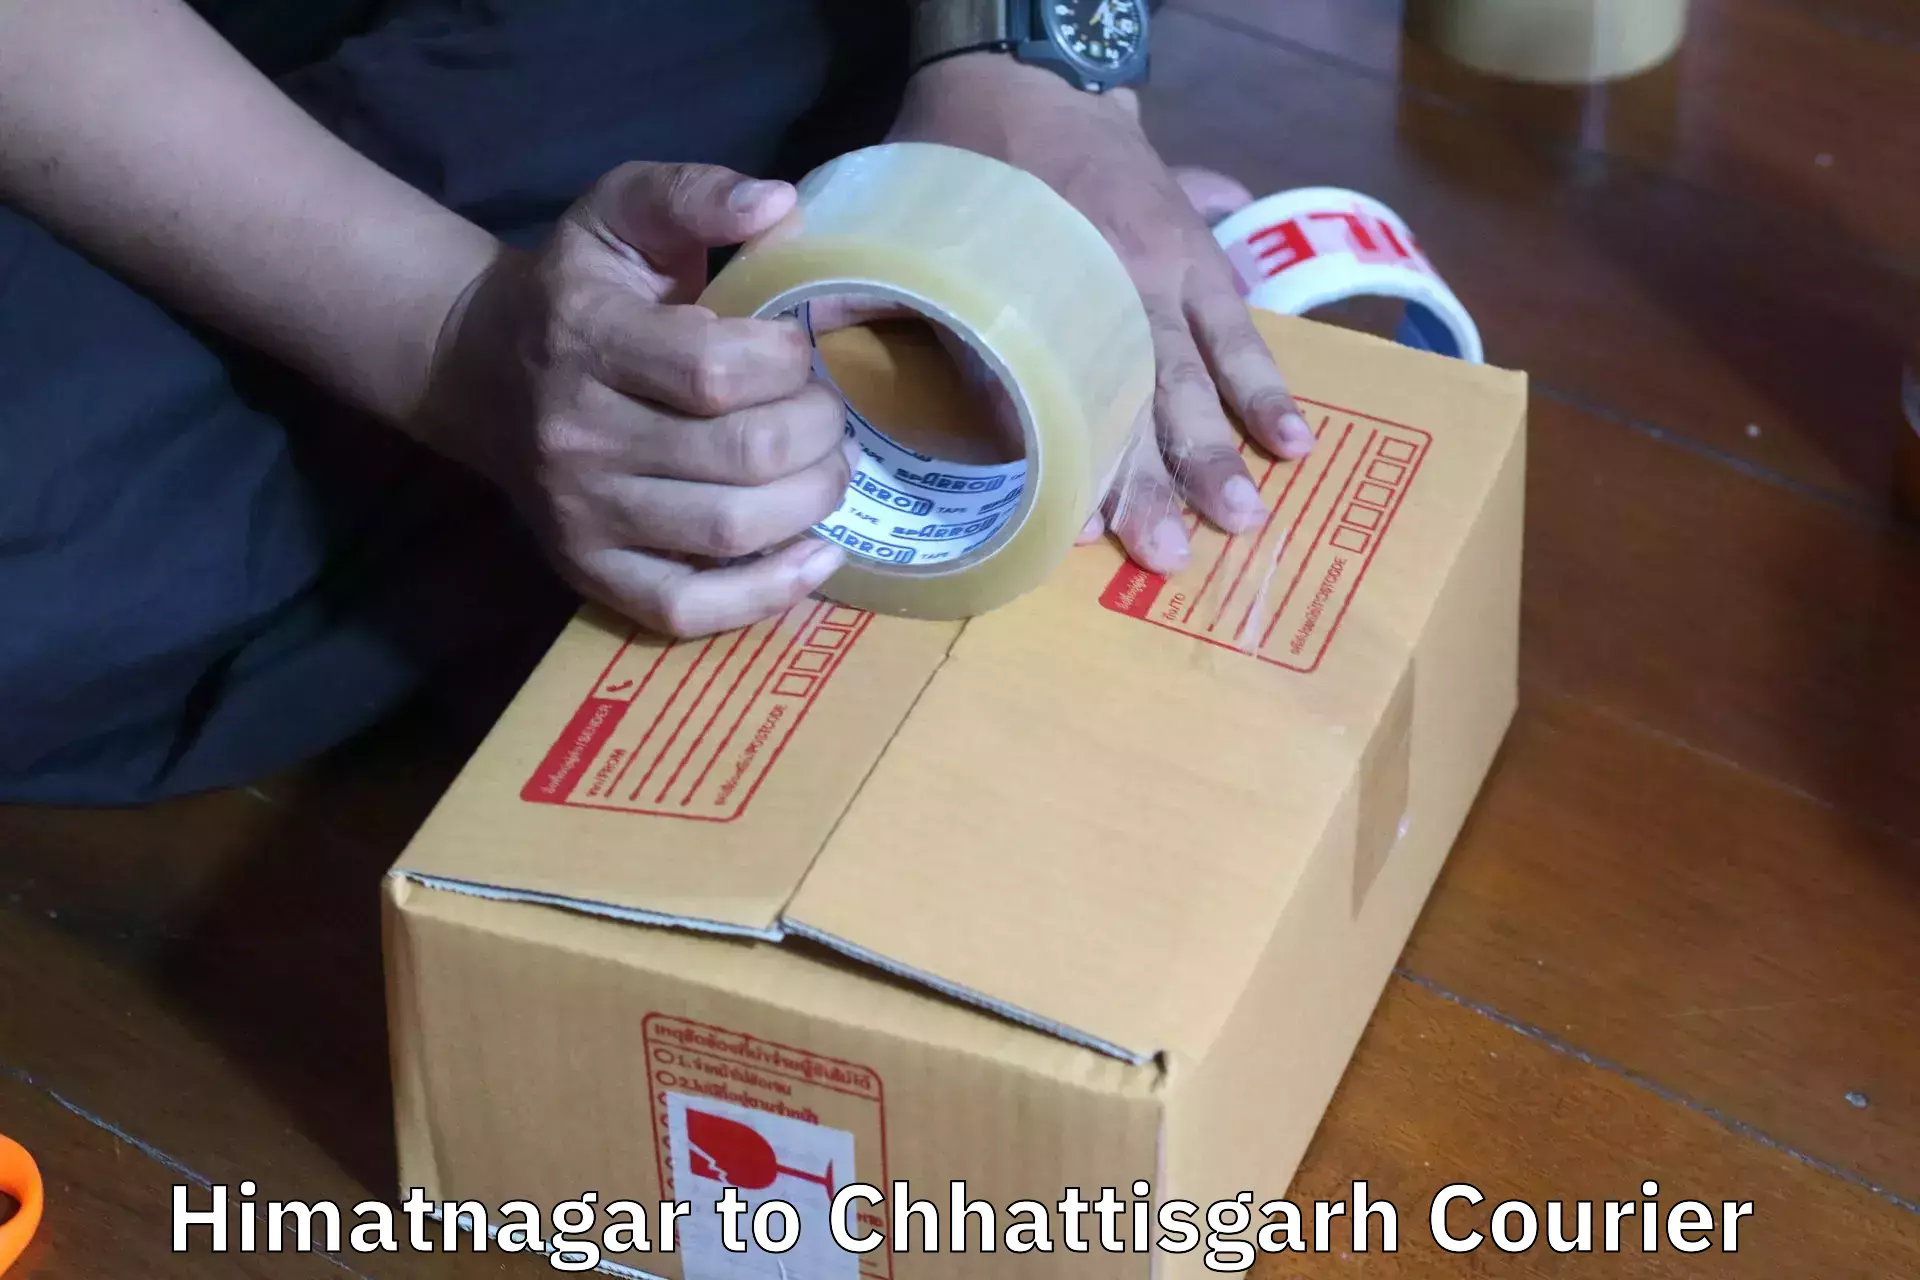 Efficient moving and packing Himatnagar to Patna Chhattisgarh